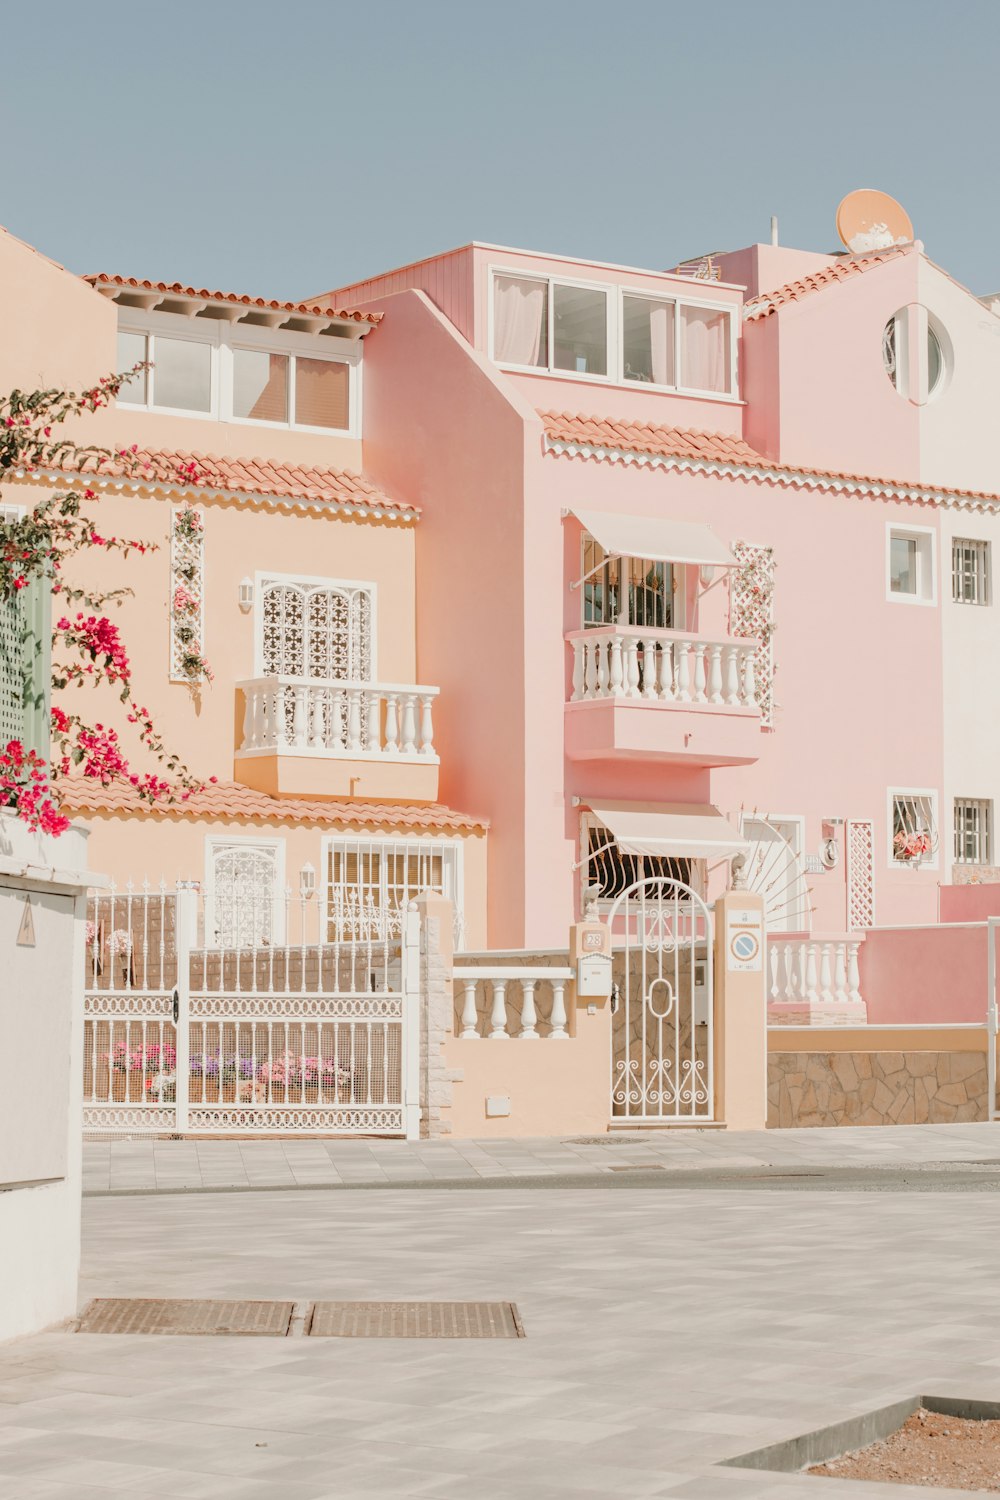 Edificio de hormigón blanco y rosa